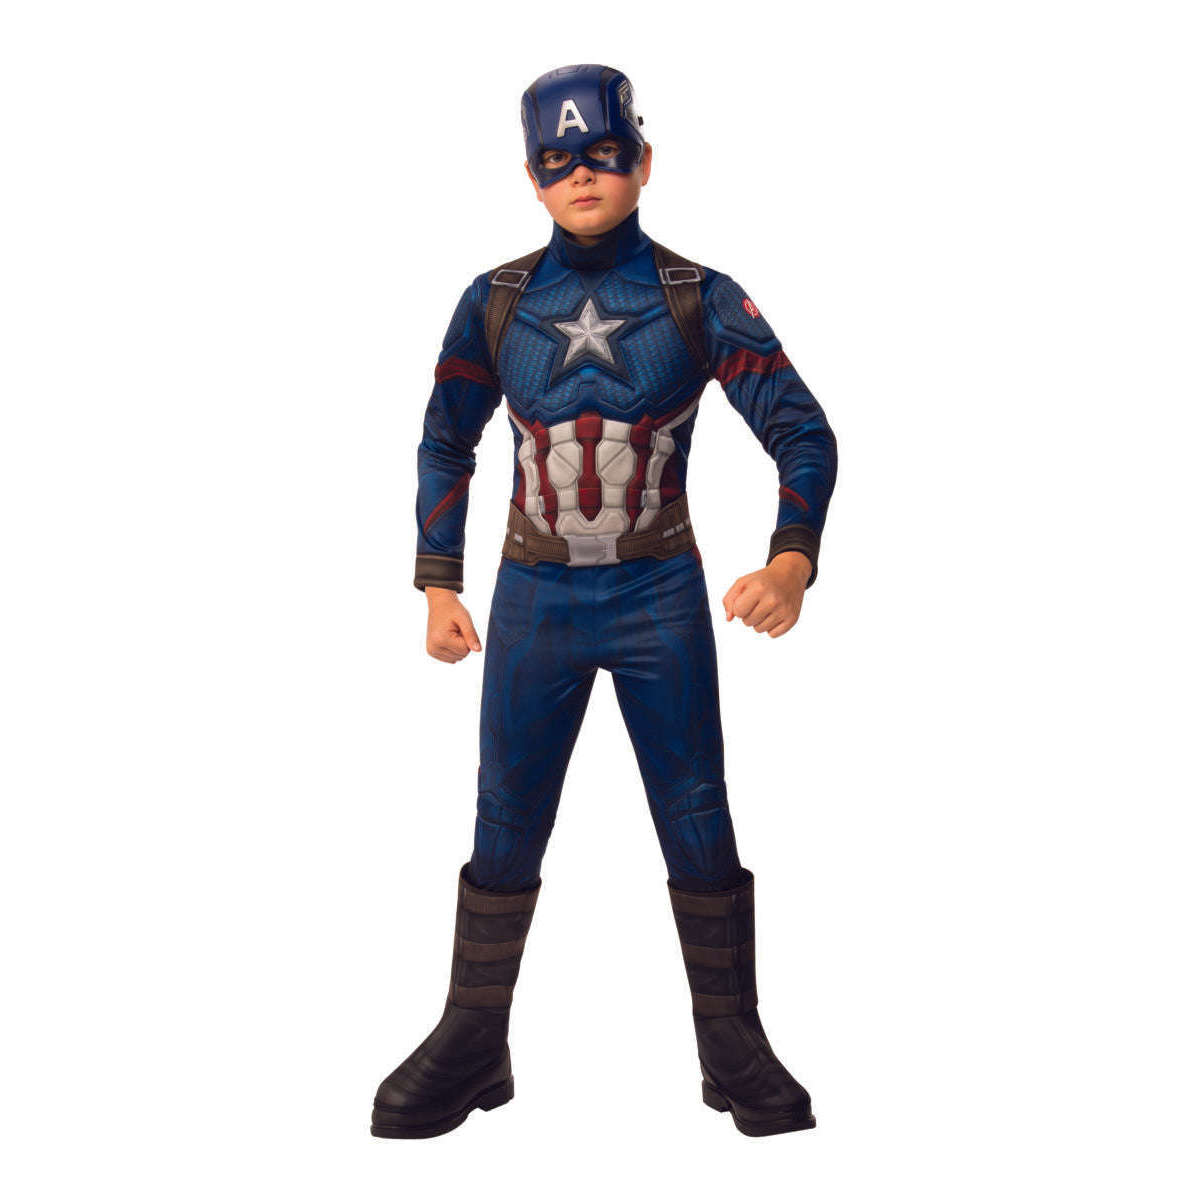 The Avengers Endgame Deluxe Captian America Child’s Costume